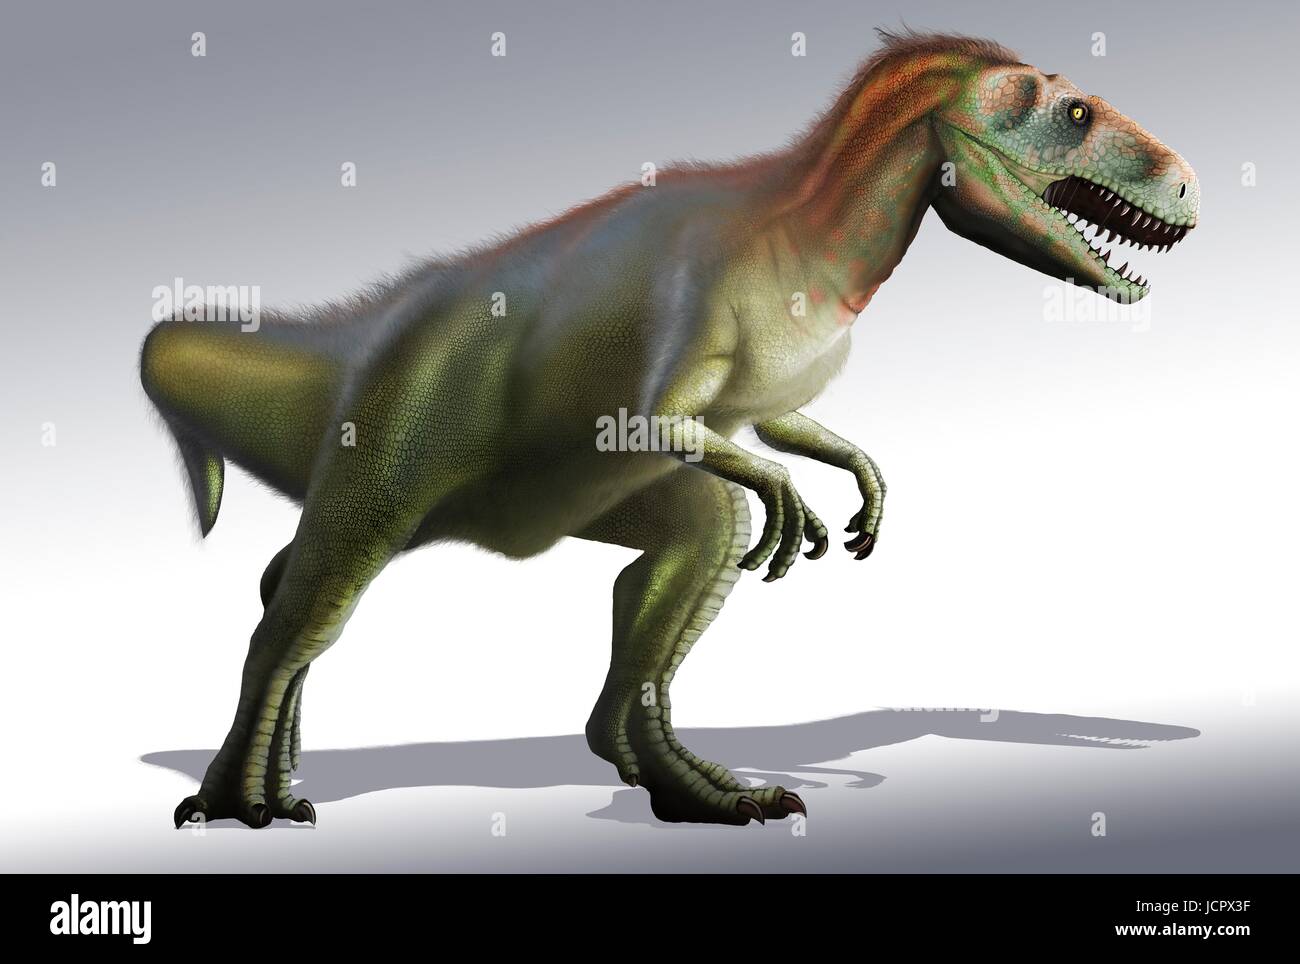 Es Megalosaurus género extintos dinosaurios que comen carne,los terópodos,desde mediados del período Jurásico en la tierraâ€™s historia,166 millones de años.vivió en lo que ahora es el sur de Inglaterra.El primer fósil de dinosaurio jamás encontrado,hace ya mucho tiempo, en 1676,fue probablemente fragmento de hueso del muslo que pertenecieron a Megalosaurus.Este animal fue mediana terópodos,6 a 7 m de largo que pesa aproximadamente una tonelada.comprensión moderna es que megalosaurus pueden haber sido cubierto de plumas de Downey,especialmente a lo largo de su vientre. Foto de stock